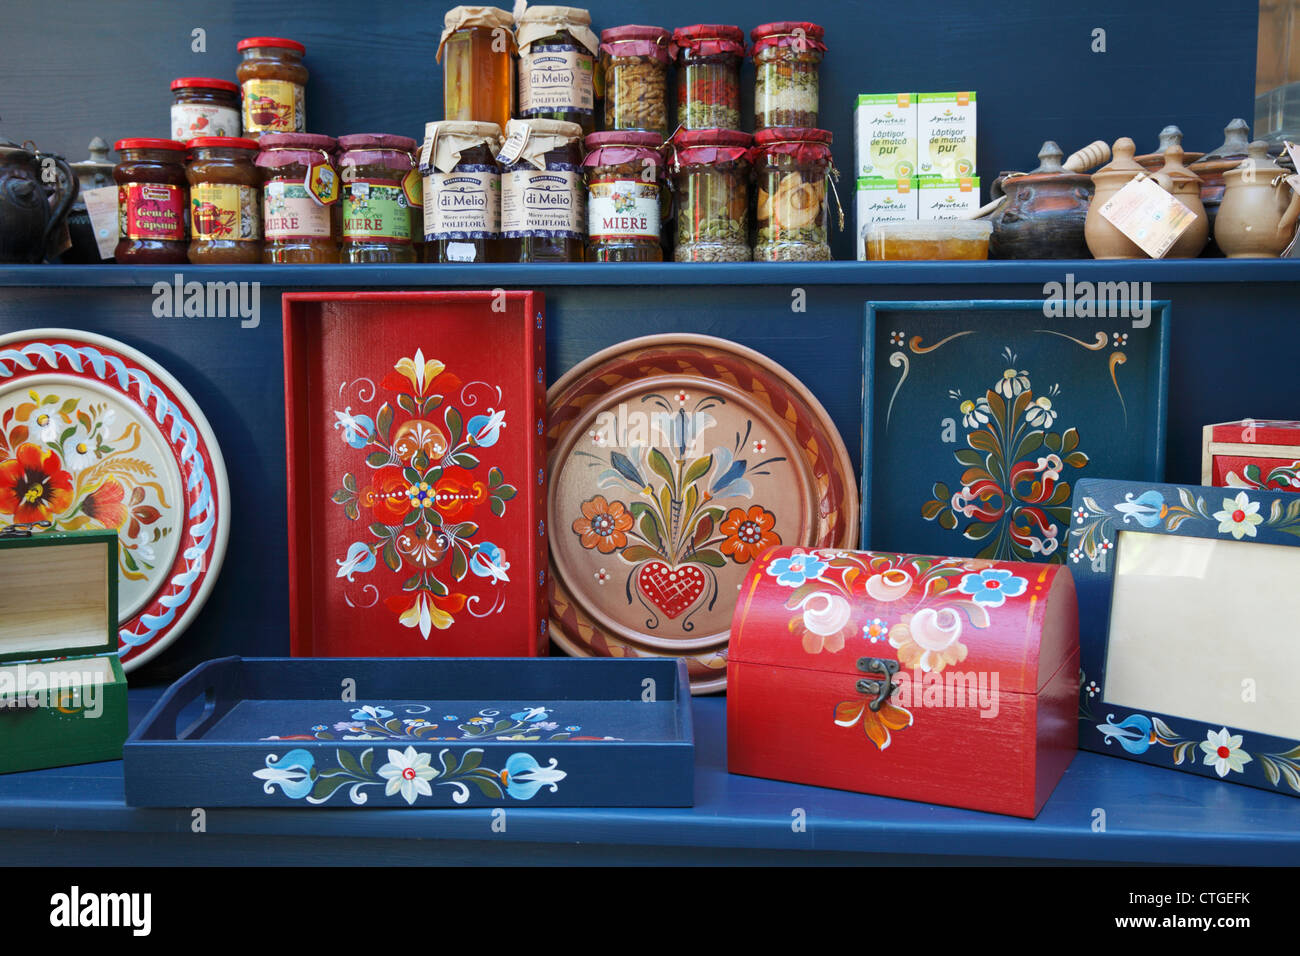 Vasi di marmellata, miele e dipinta a mano scatole, piatti e vassoi in un negozio di articoli da regalo nella crusca, Transilvania, Romania Foto Stock